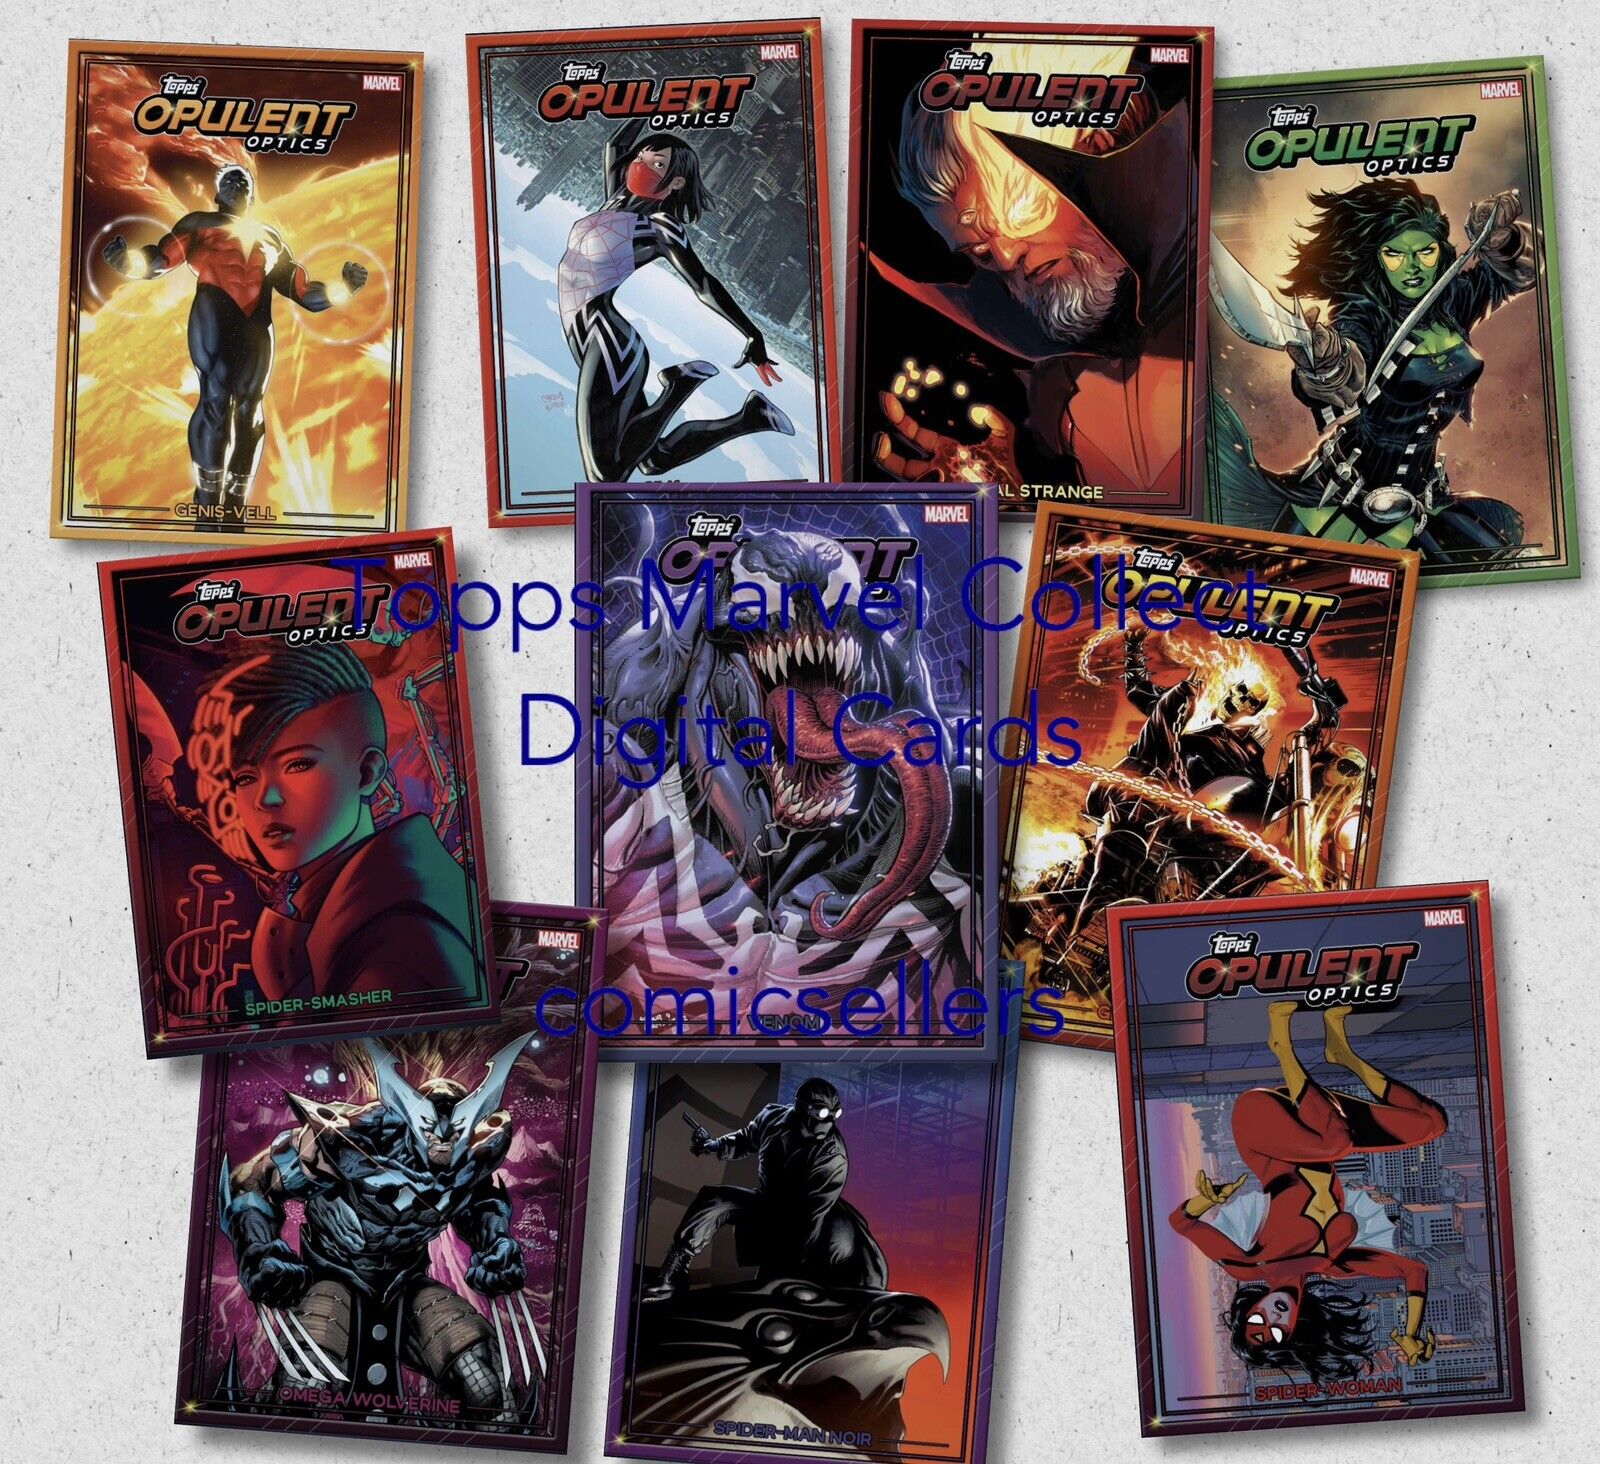 Topps Marvel Collect Opulent Optics 23 - 10 Card Base Color Unc Set [Digital]